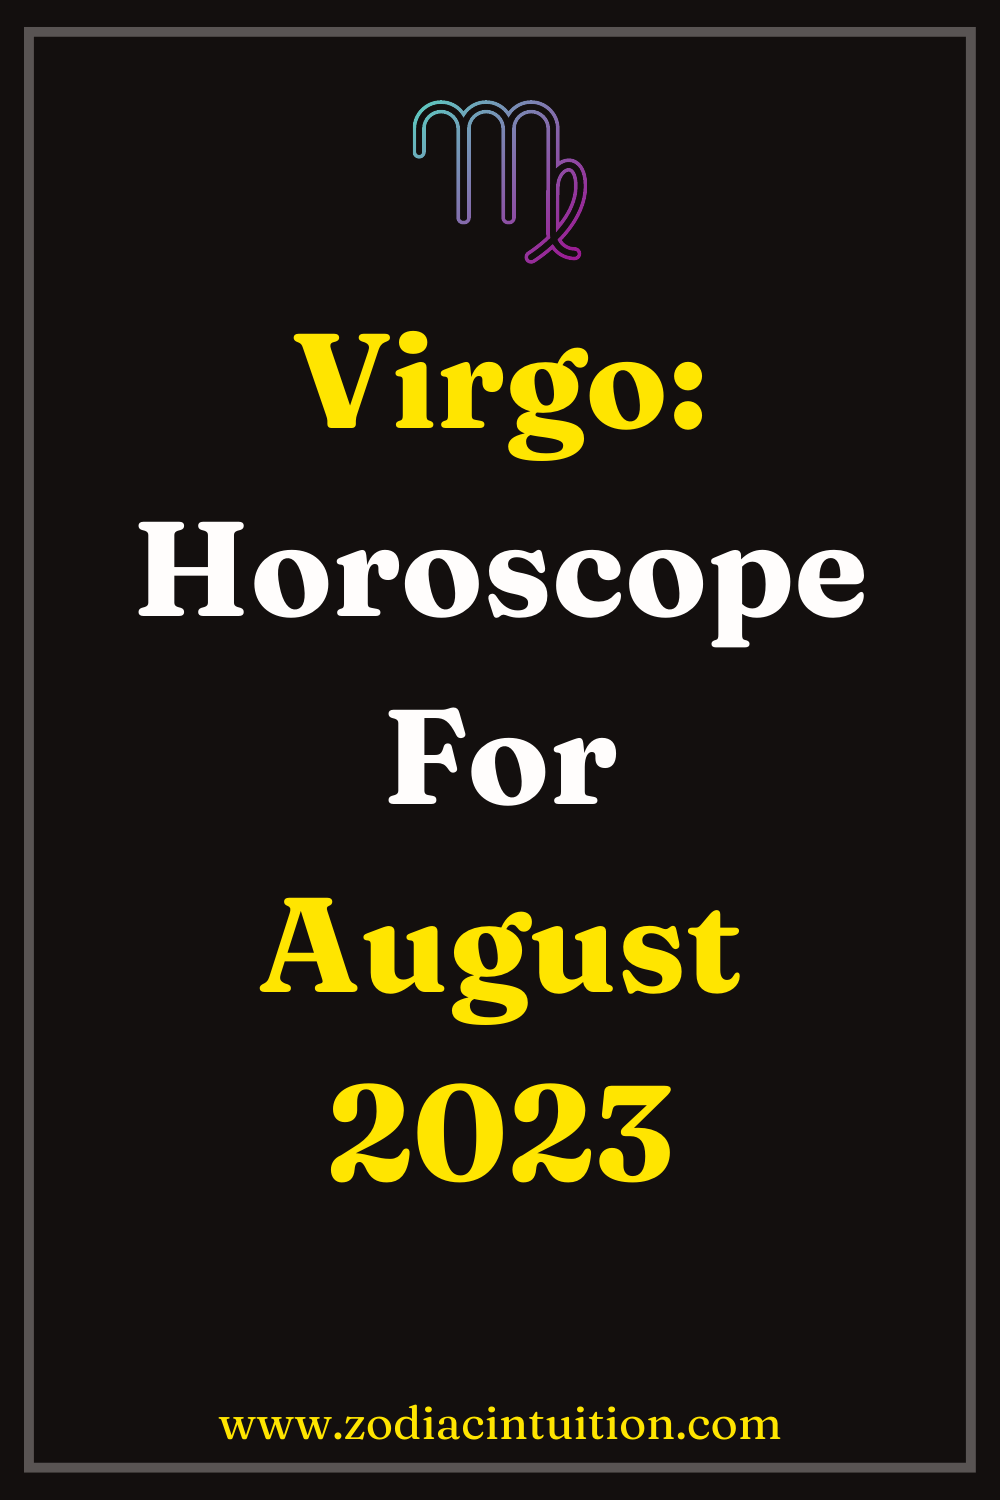 Virgo: Horoscope For August 2023